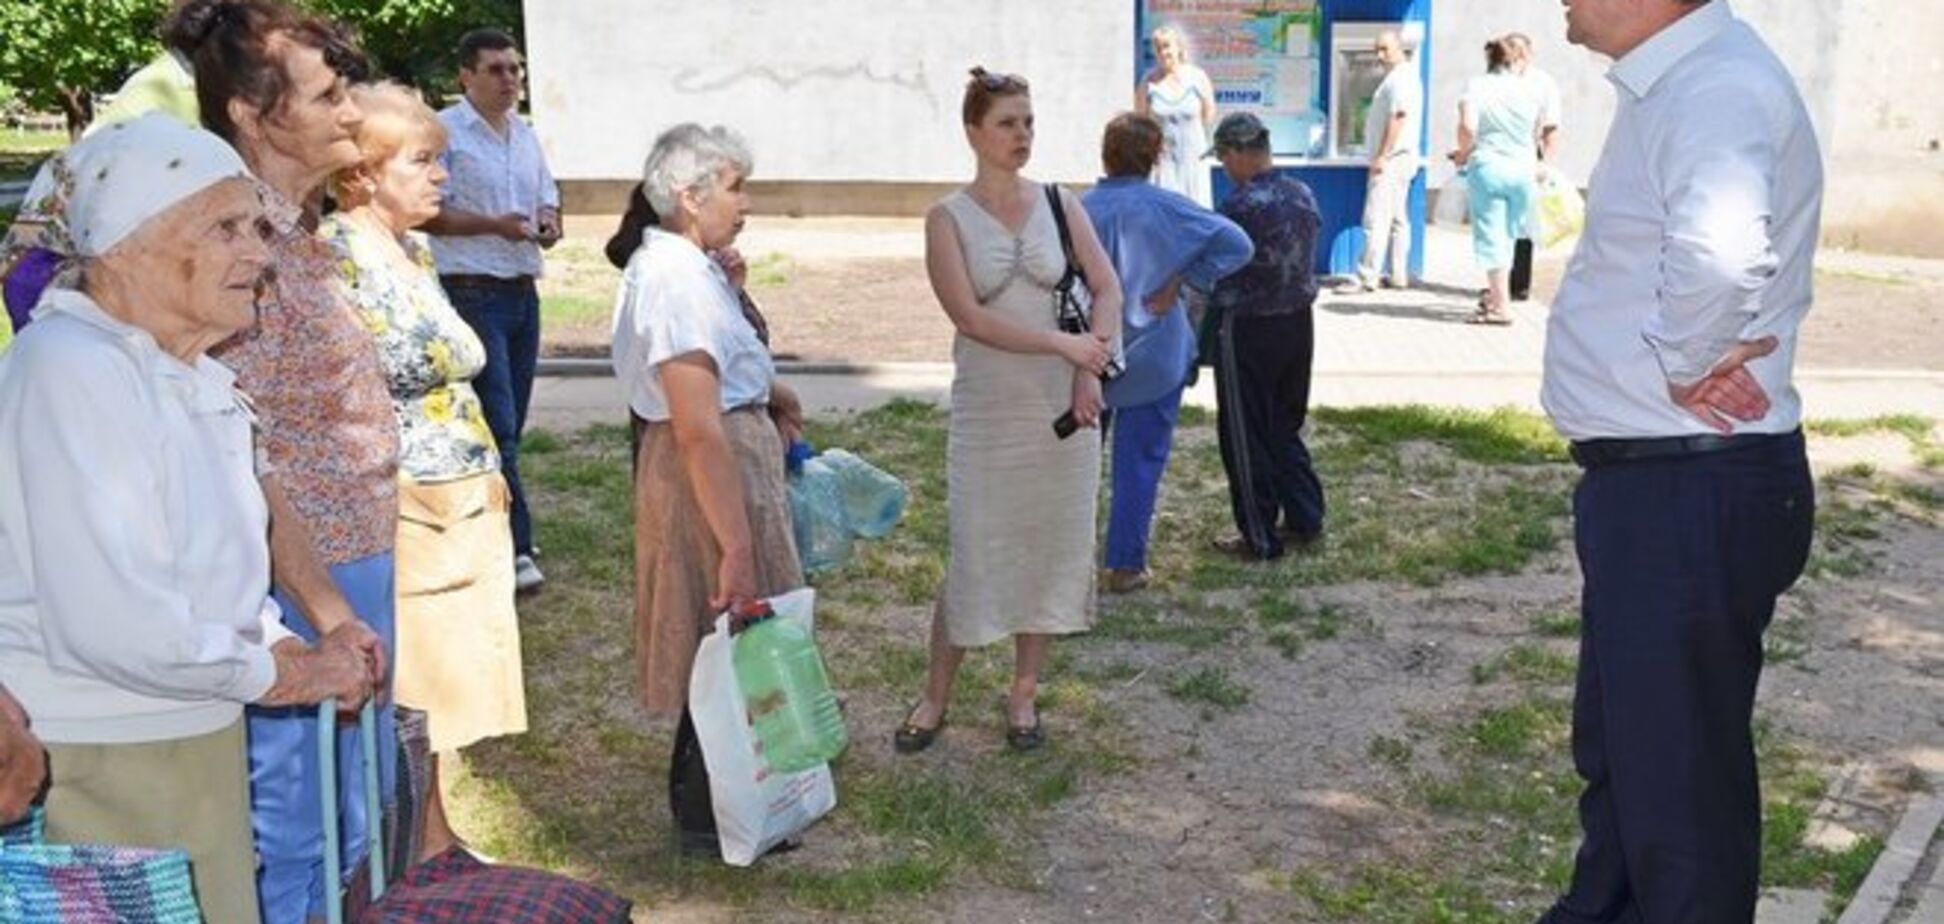 ЗМІ запідозрили мера Луганська у використанні фотошопу